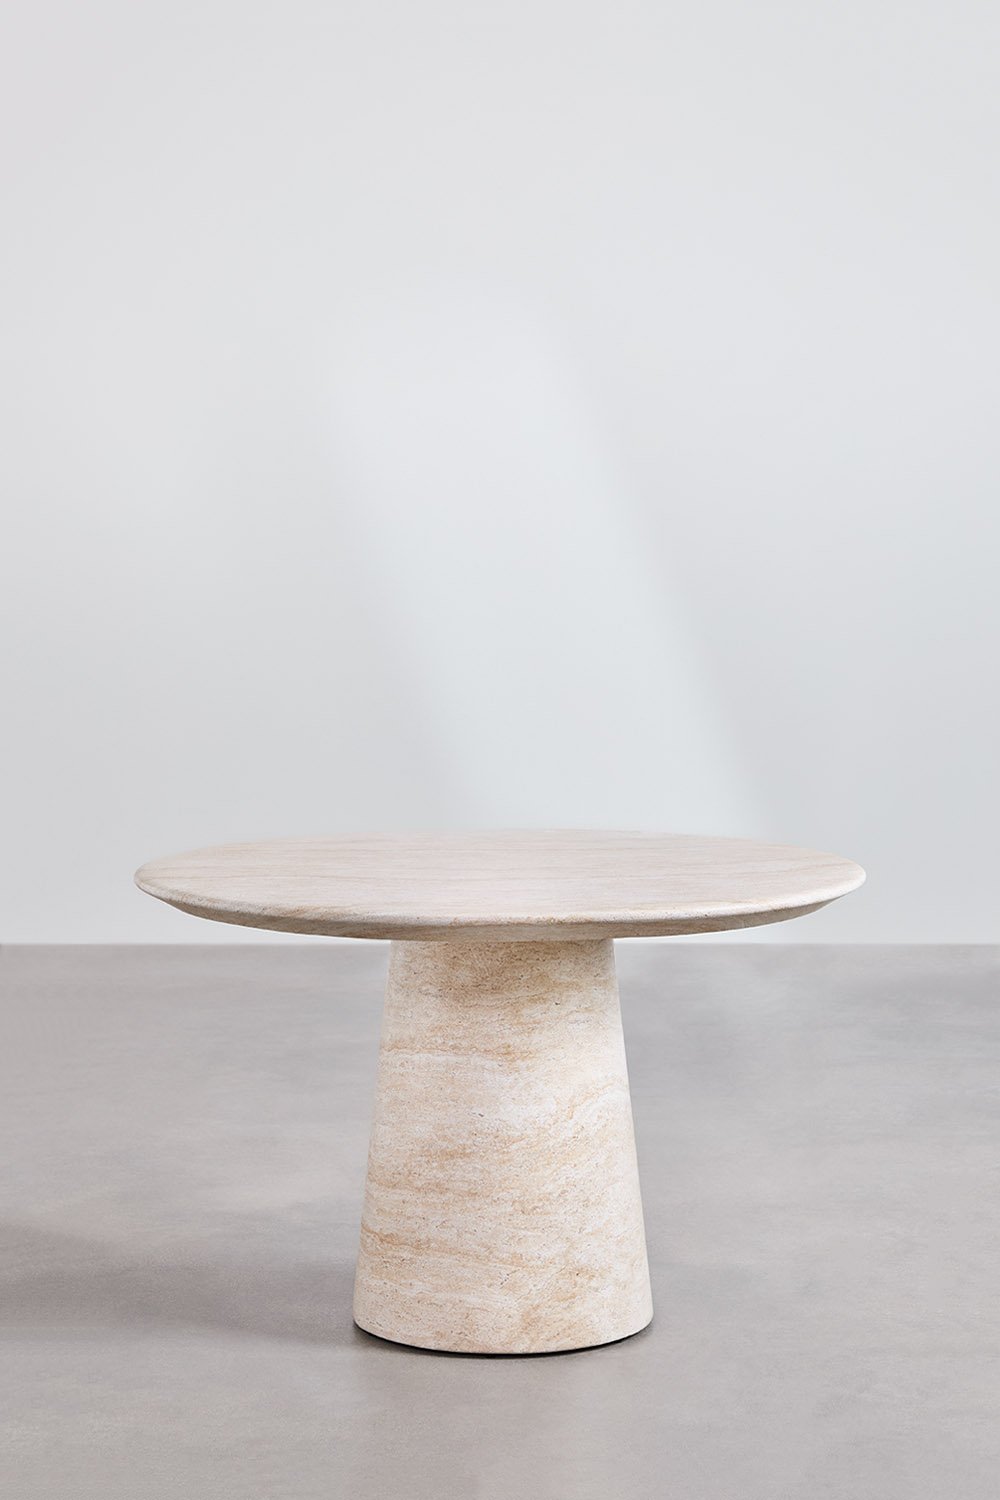 Tavolo da pranzo rotondo in cemento effetto travertino (Ø120 cm) Velia, immagine della galleria 2